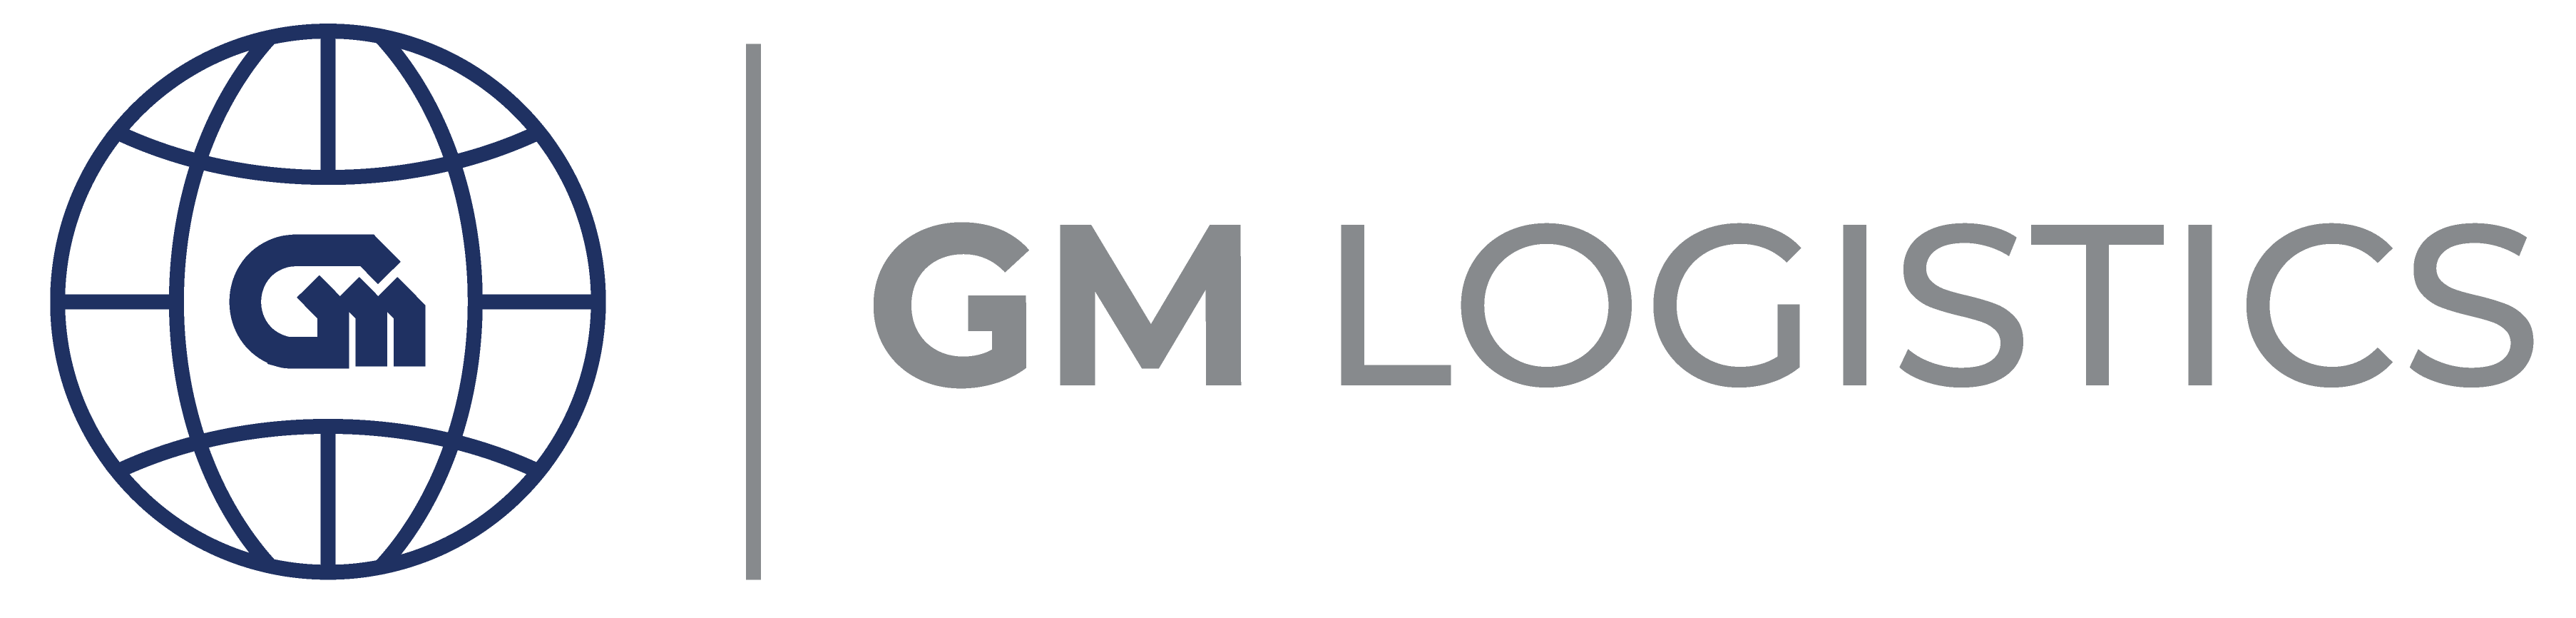 GM Logistics